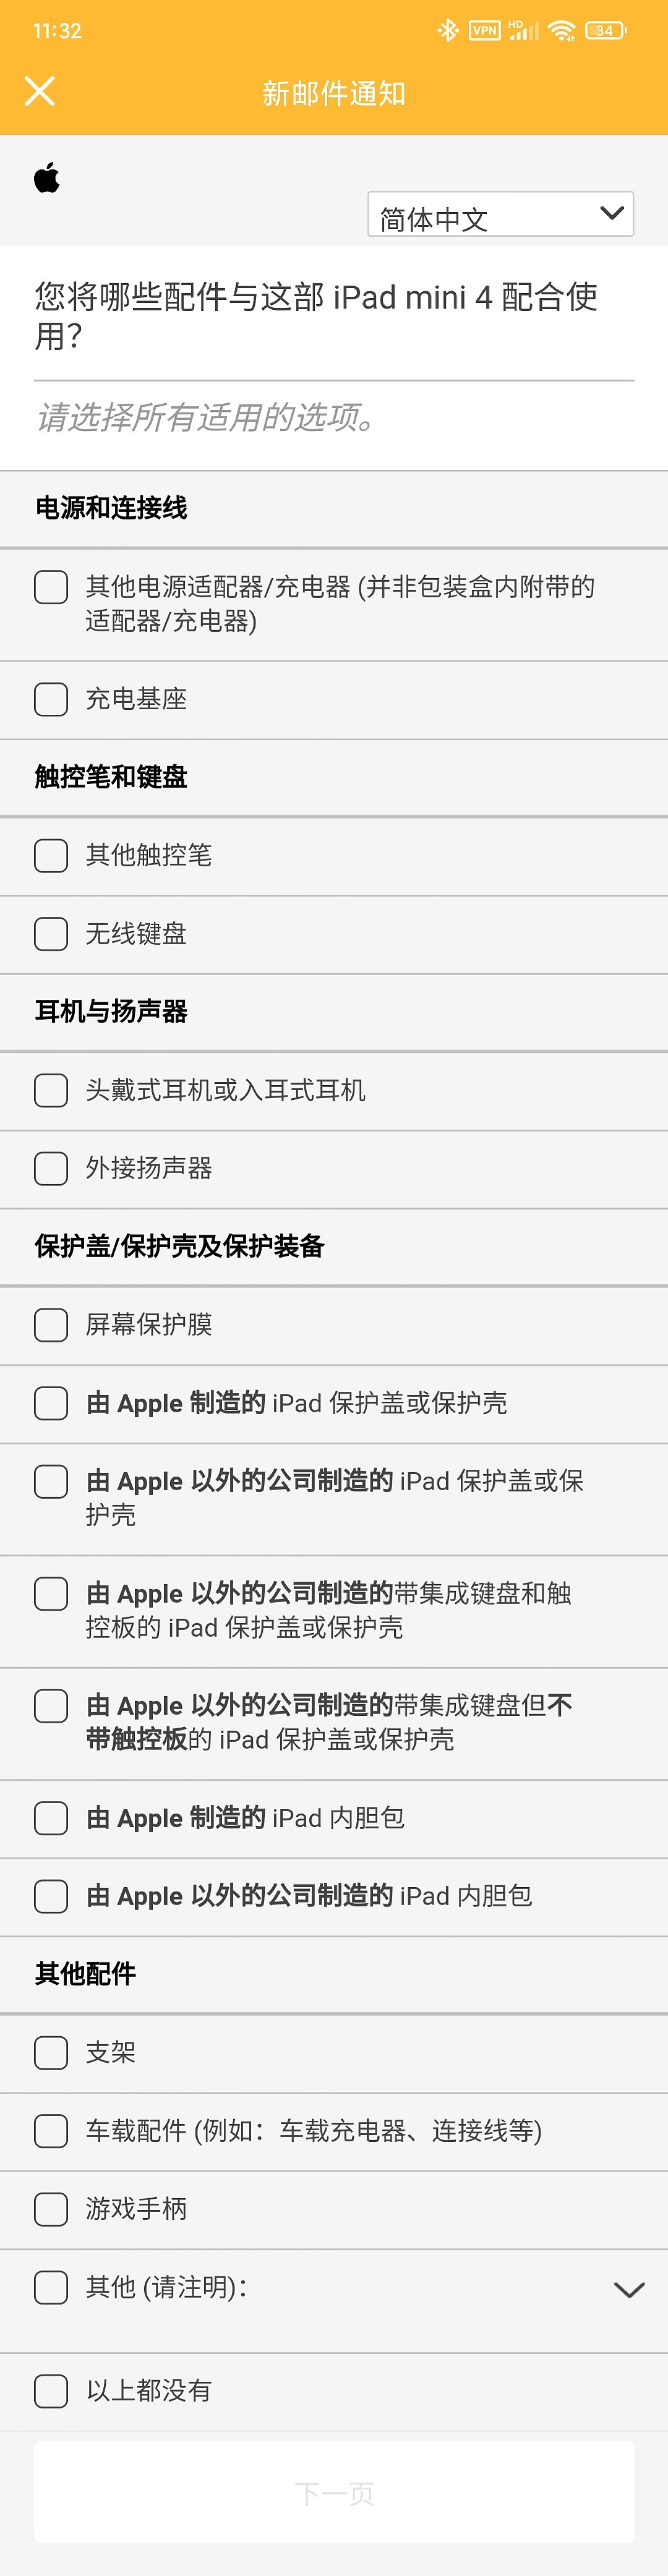 苹果调查 iPad mini 显示屏尺寸/iPadOS 满意度，哪些 App 喜欢横/纵向使用 - 5